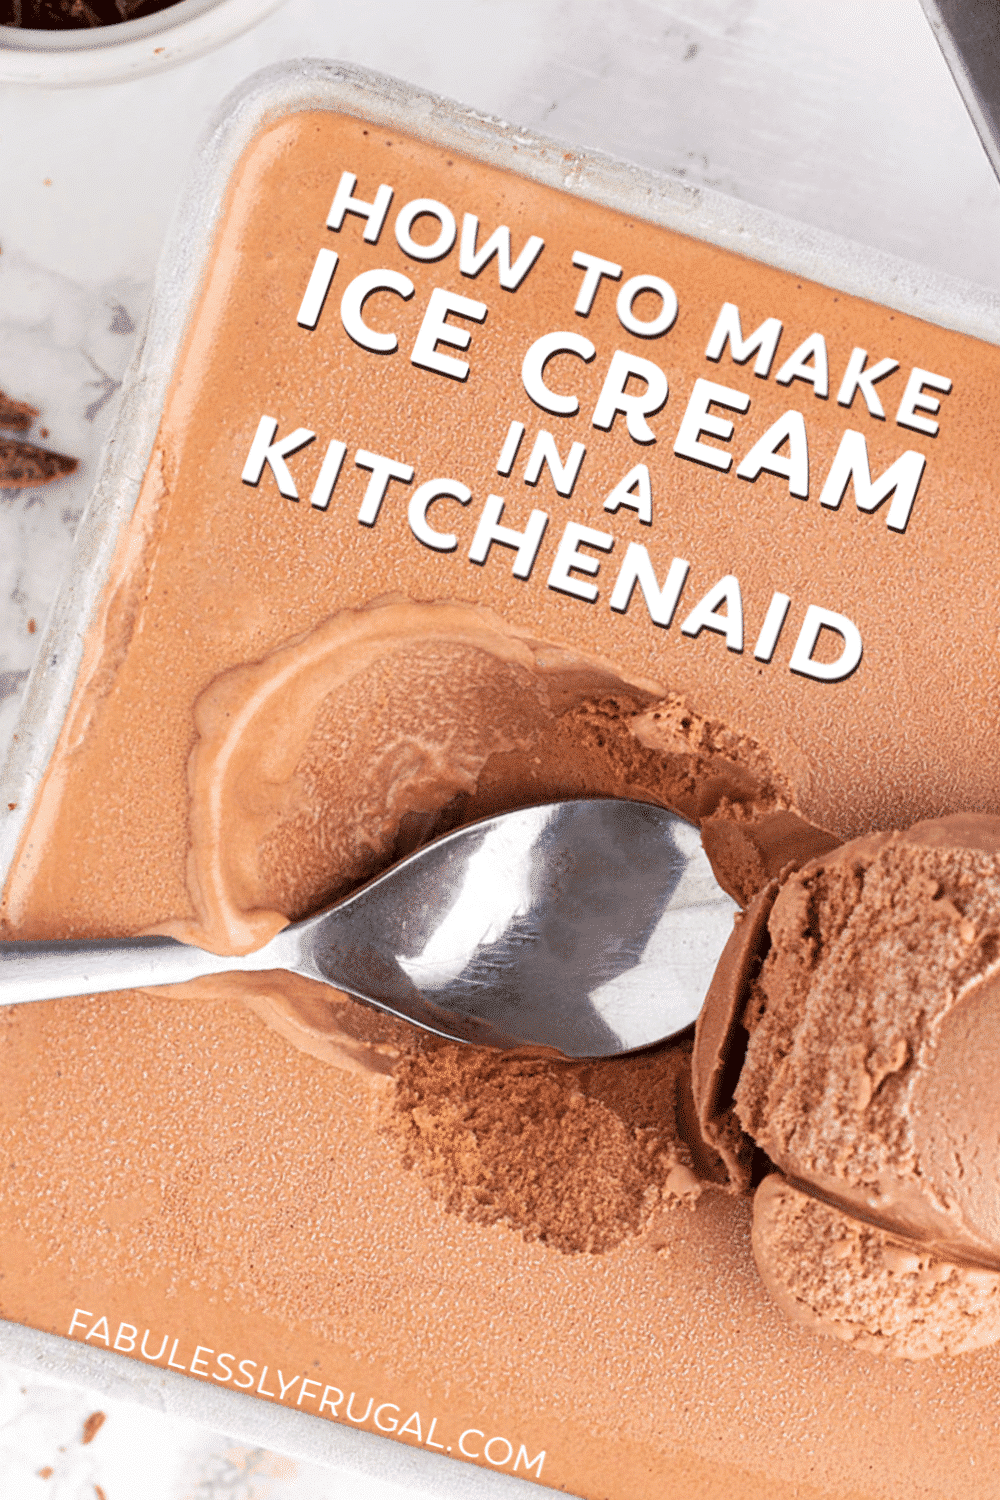 Homemade chocolate ice cream in the kitchenaid mixer